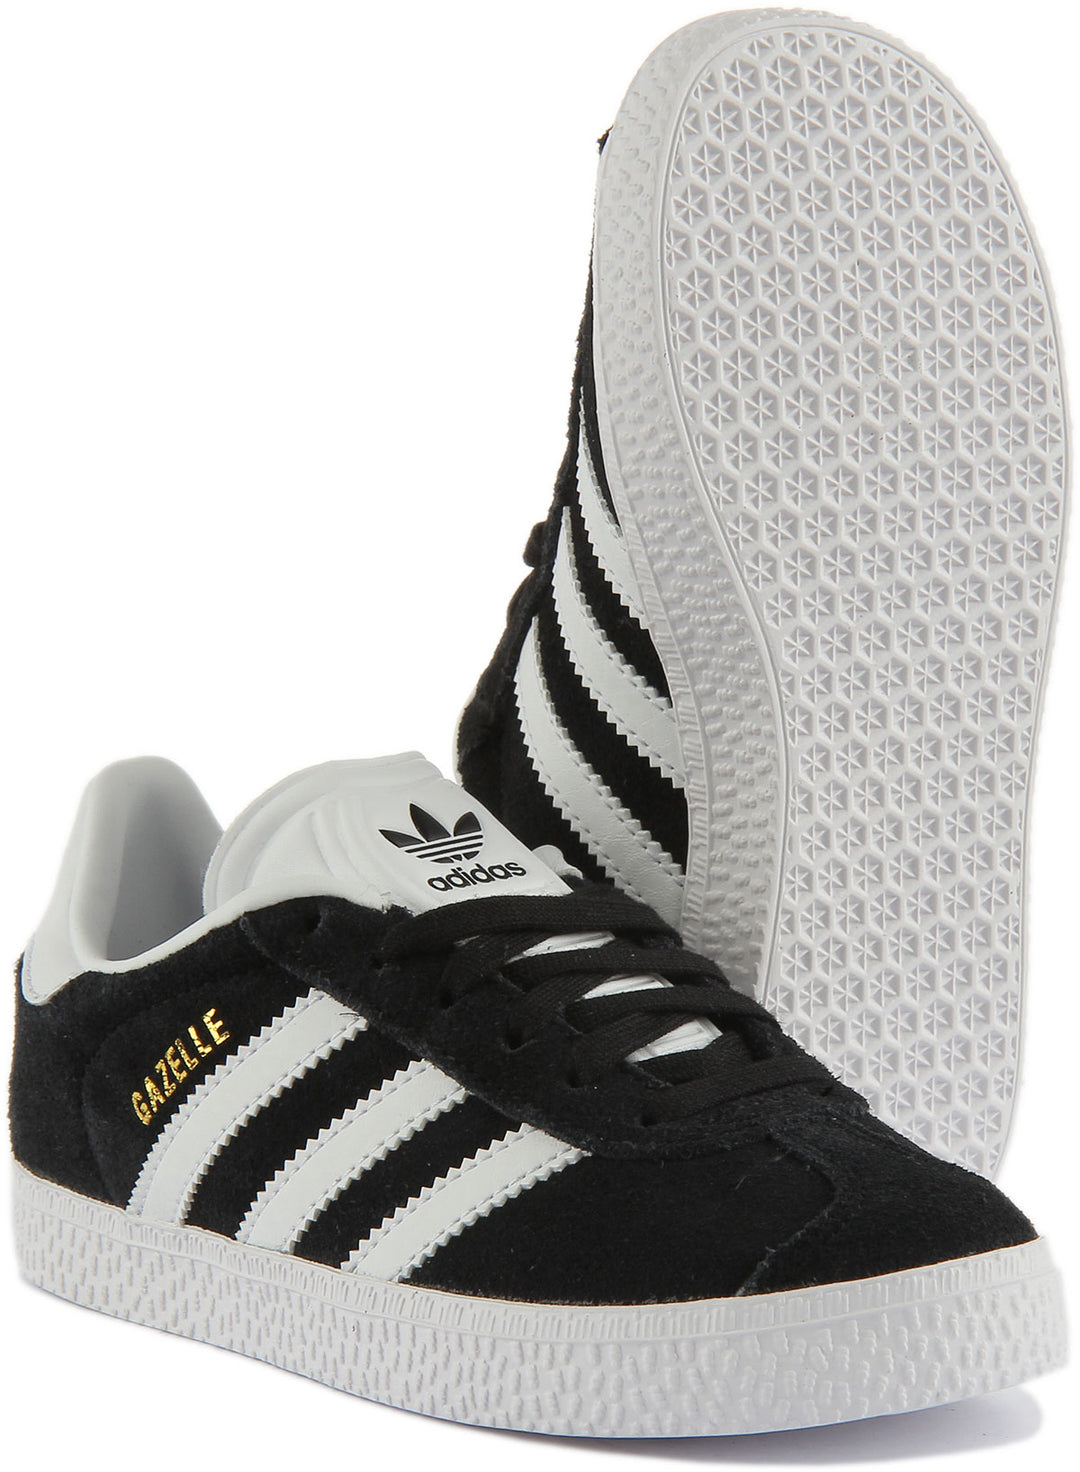 Adidas Gazelle C Scarpe da ginnastica in pelle scamosciata per bambini in nero bianco